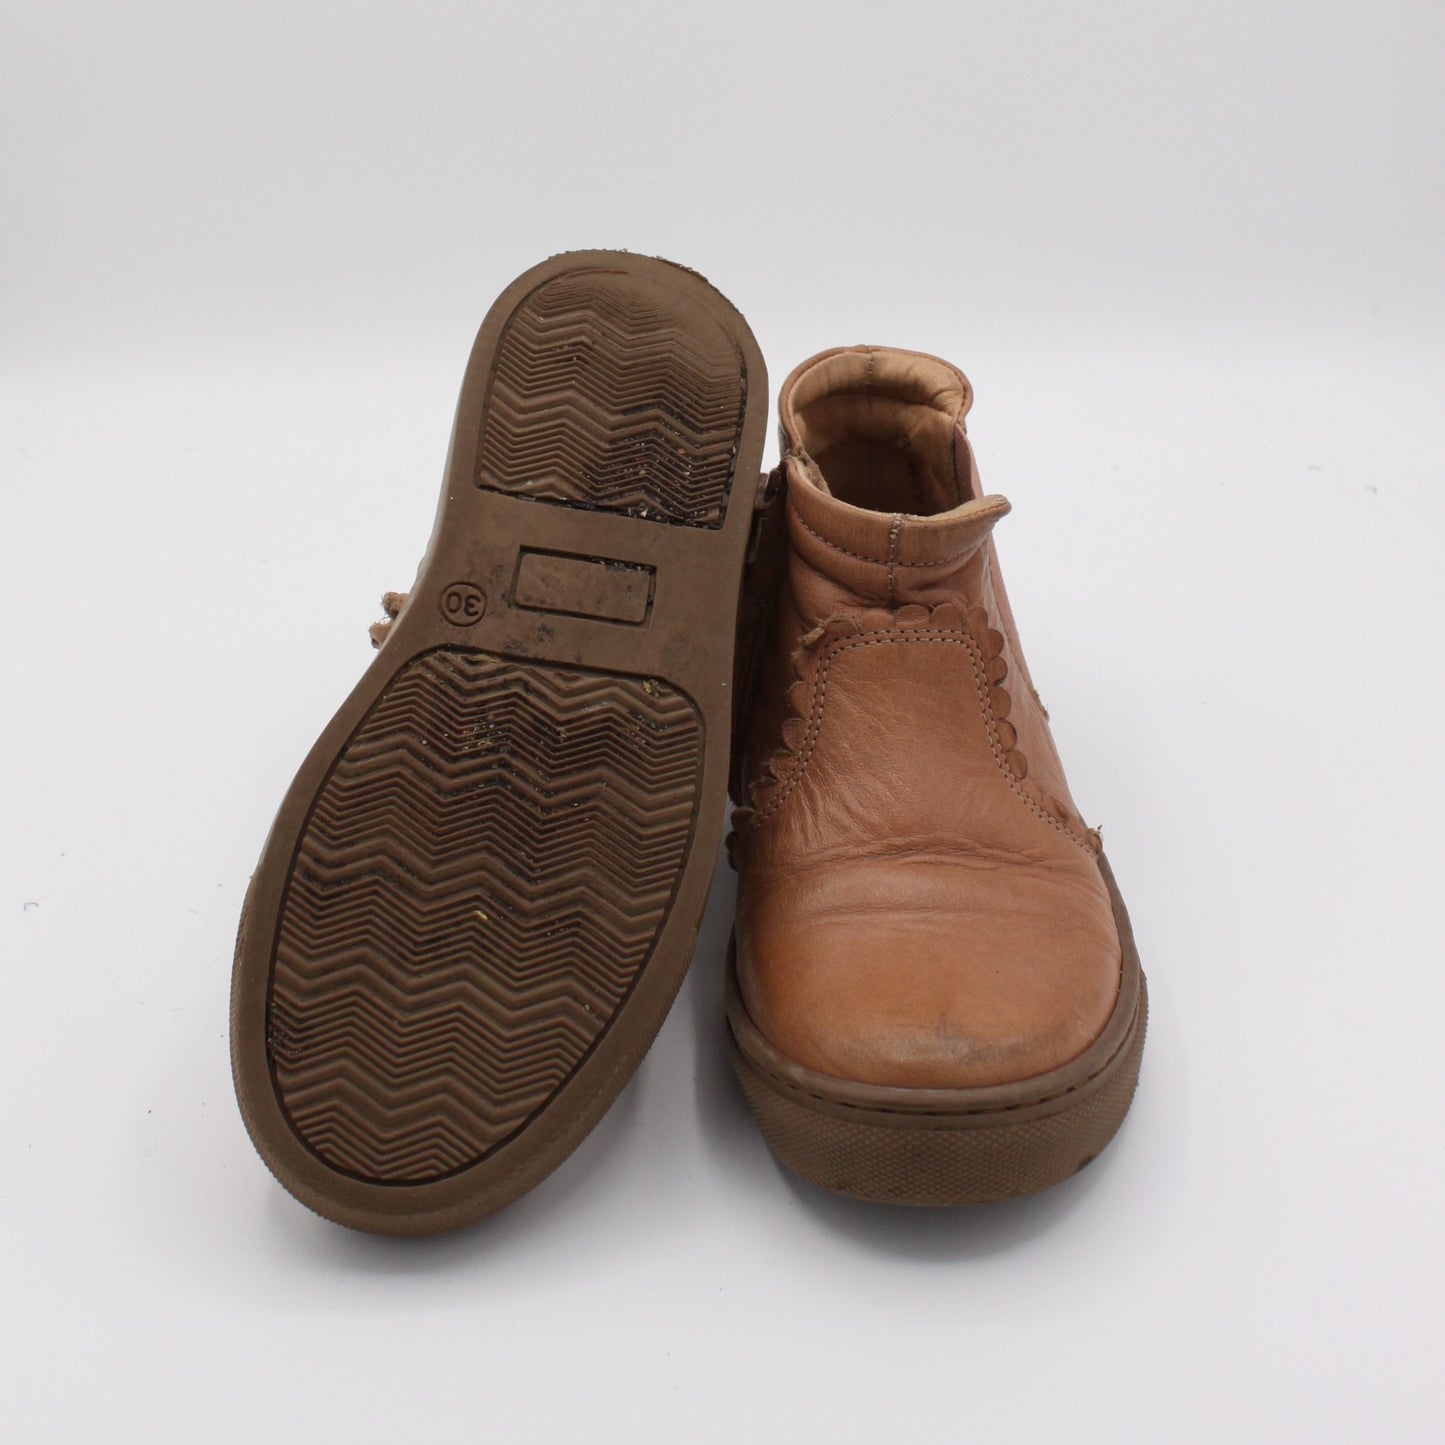 Pre-loved Schuhe (30EU)